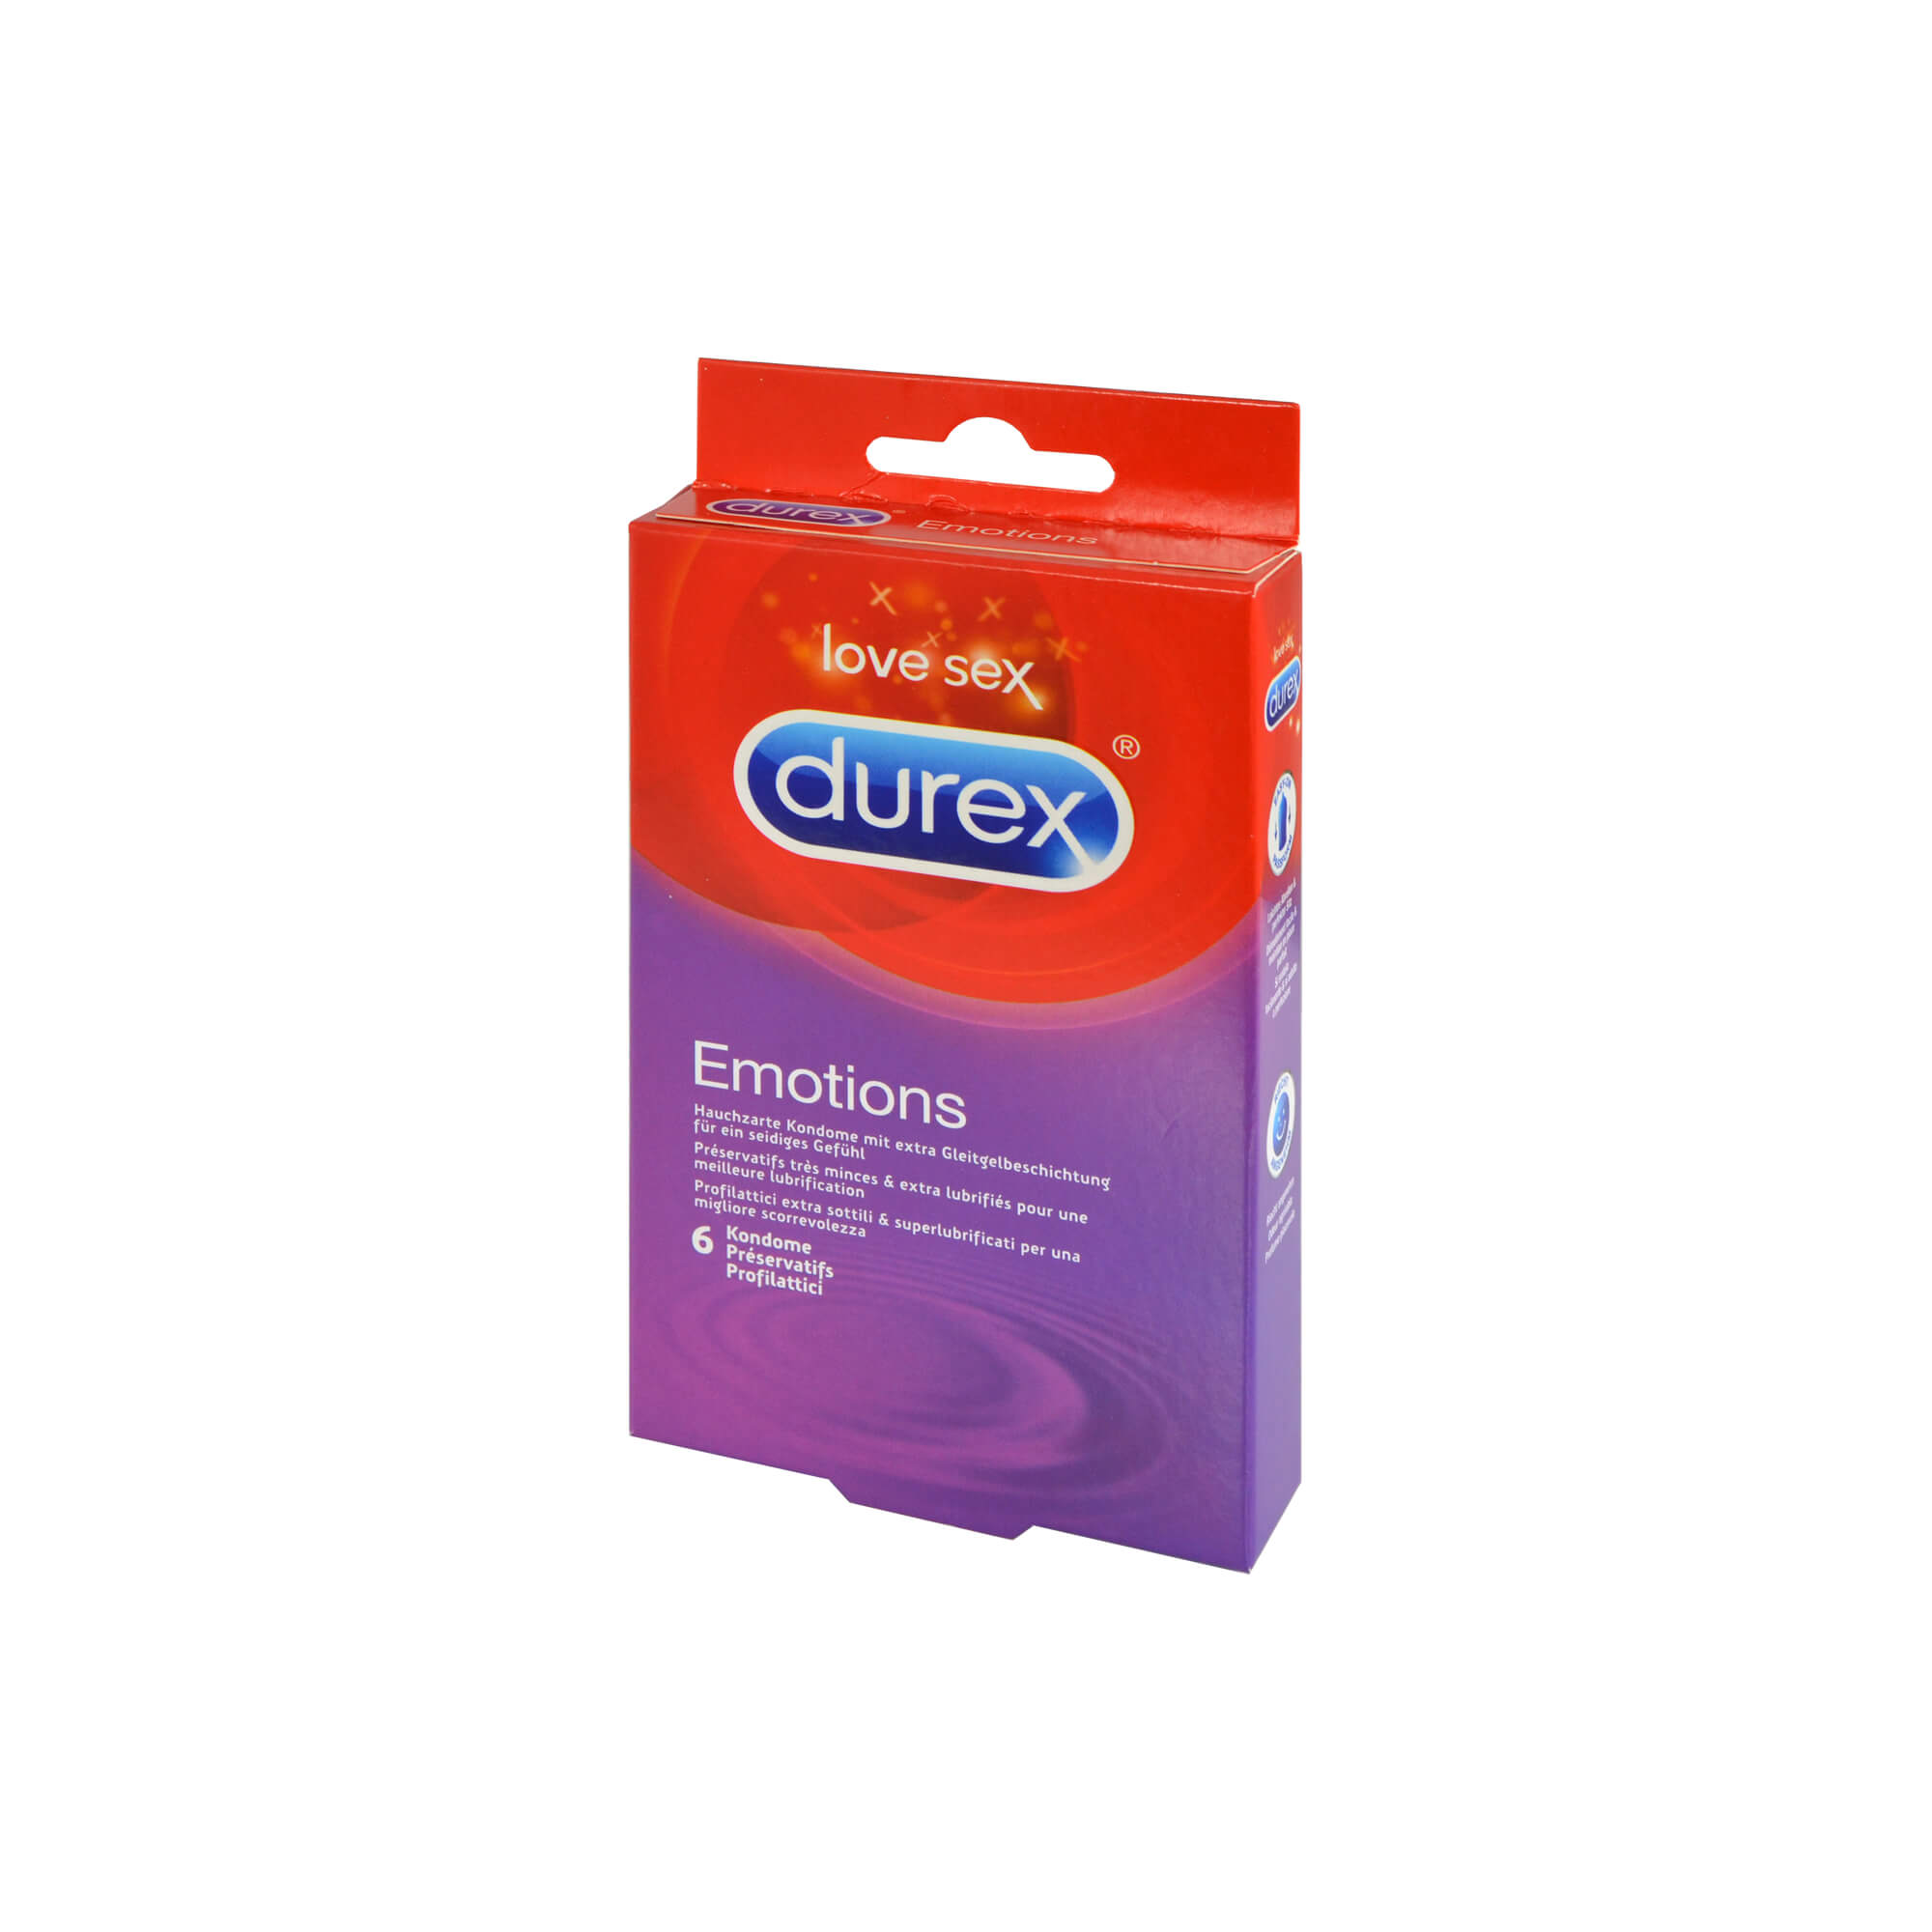 Hauchzarte Kondome mit extra Gleitgelbeschichtung  für ein seidiges Gefühl beim Sex.